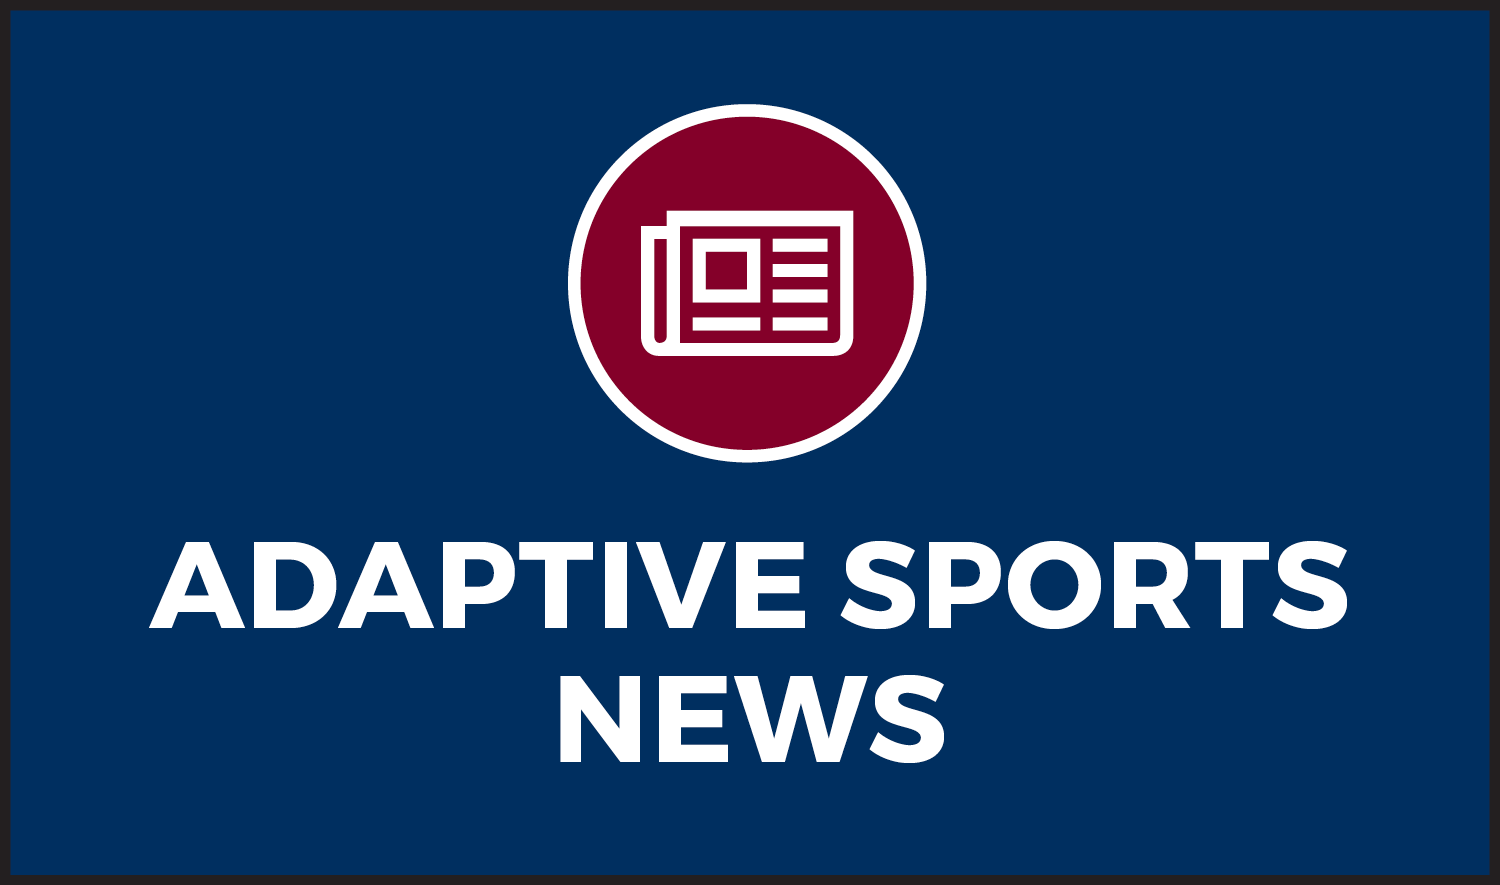 Noticias sobre el programa Adaptive Sports